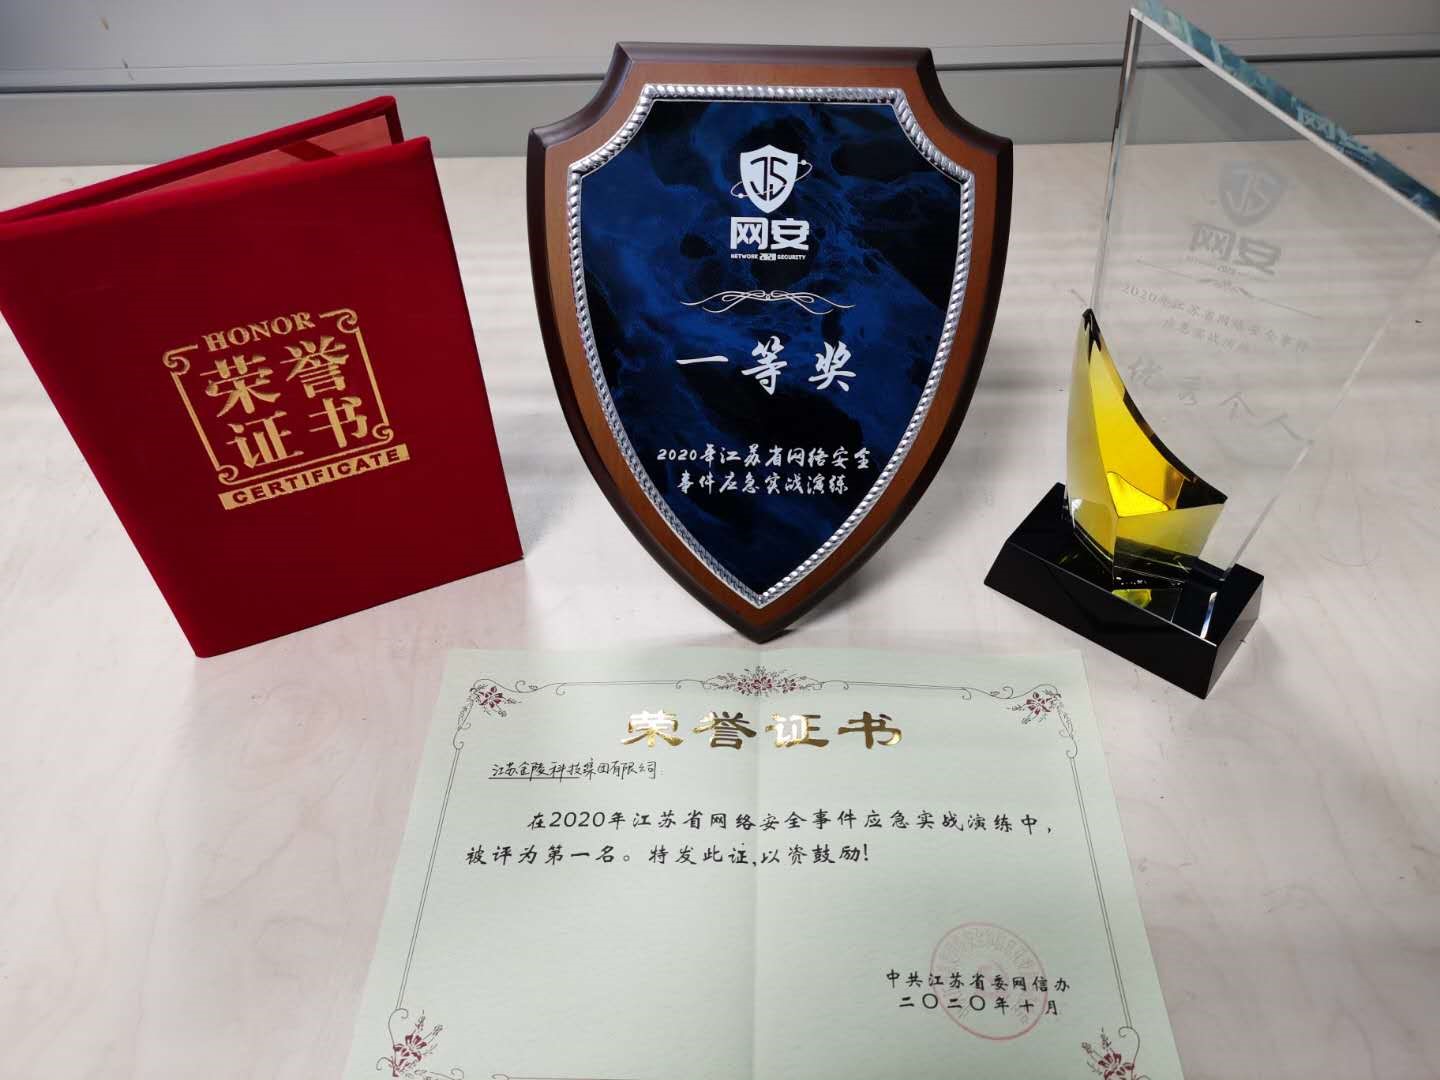 金陵科技在江苏省网络安全事件应急实战演练中荣获第一名